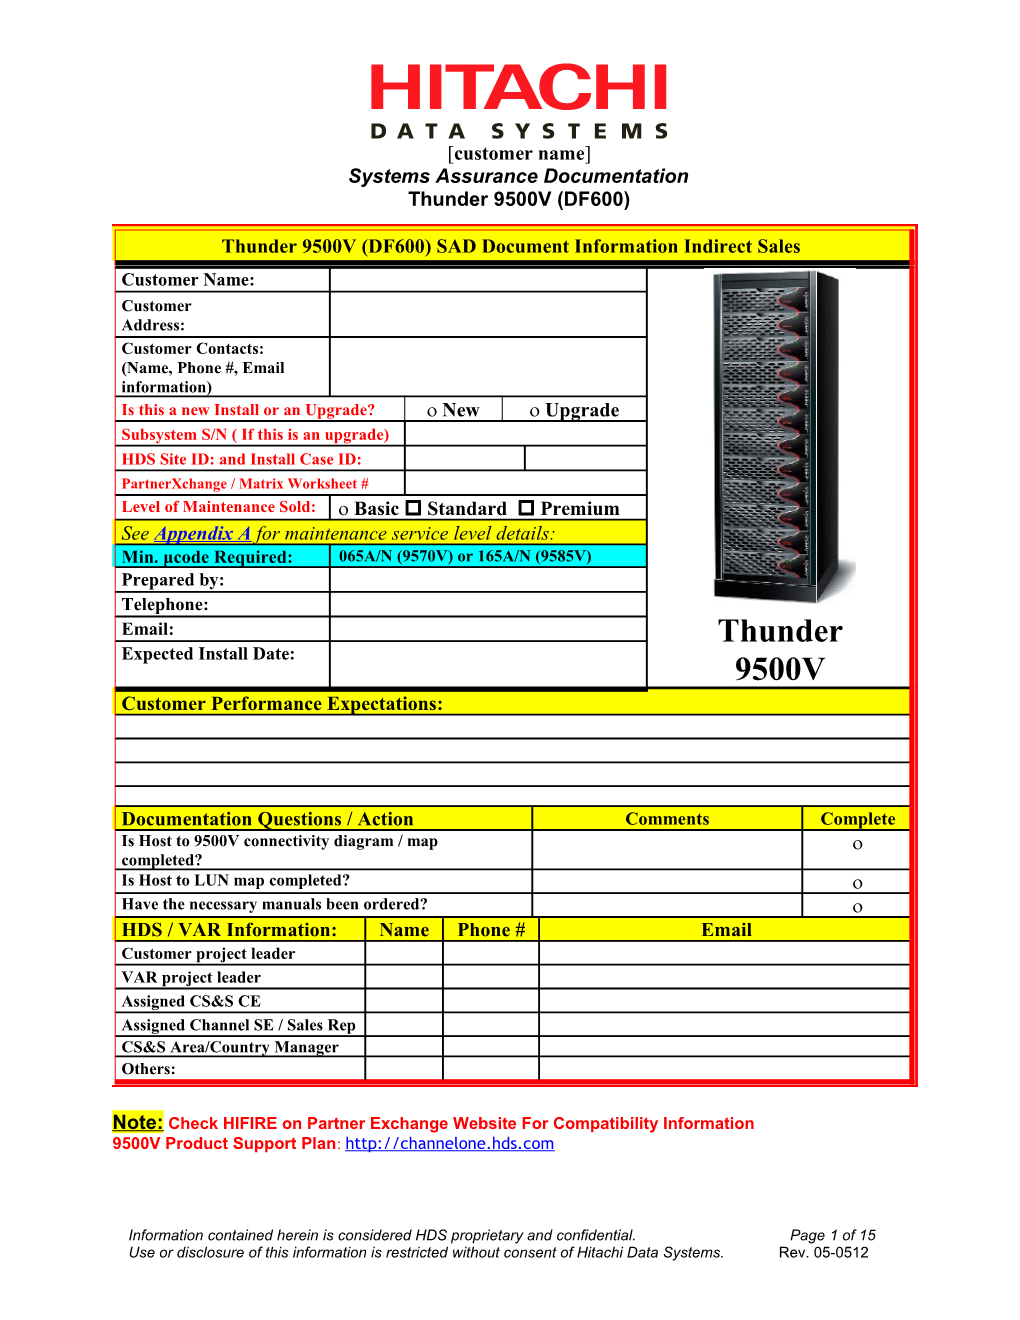 Thunder 9500V - Systems Assurance Document